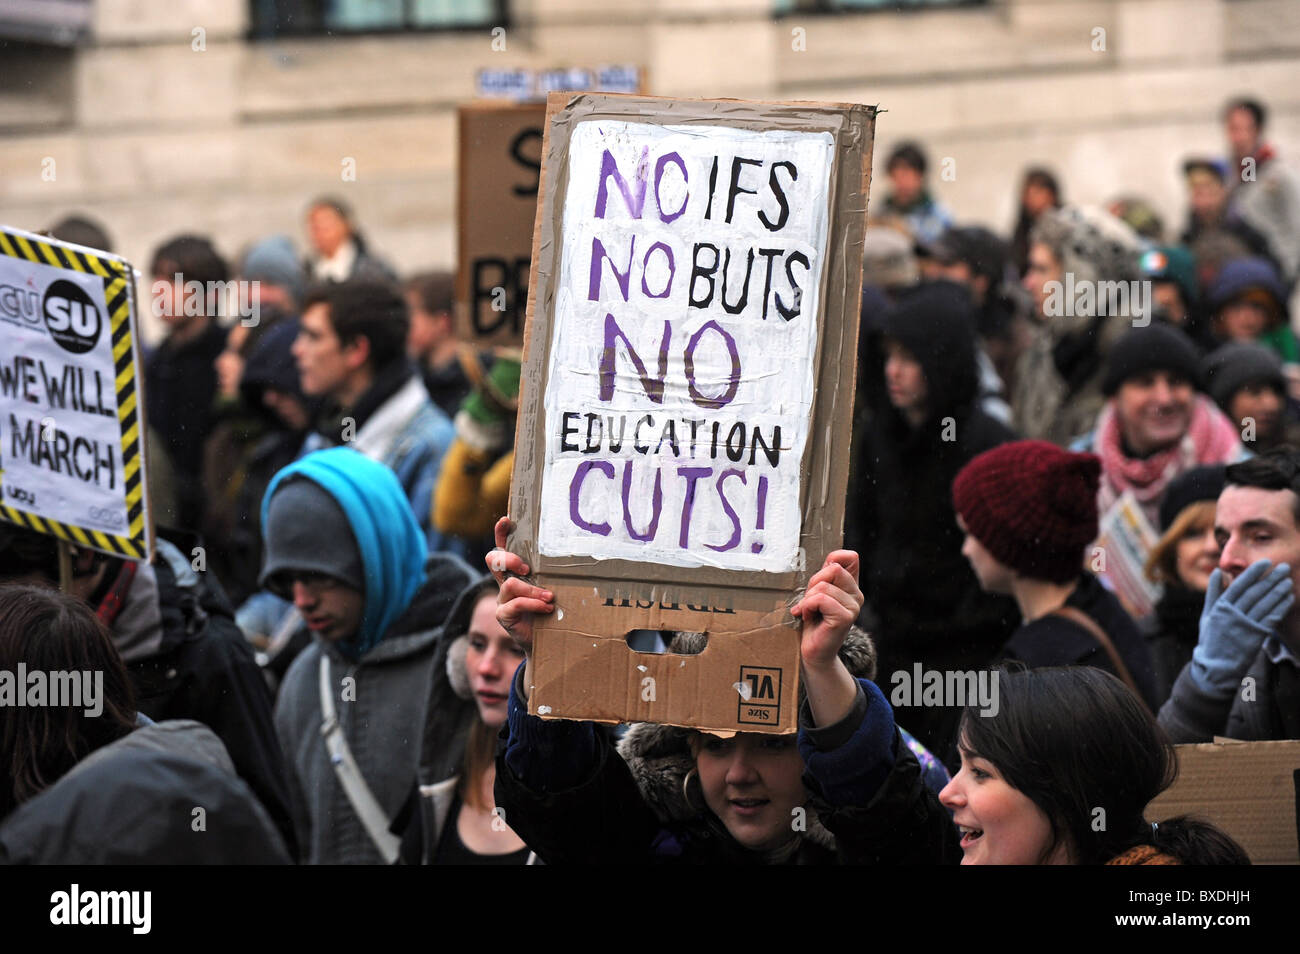 Massendemonstration in Brighton gegen Regierung Kürzungen der Hochschulfinanzierung - start Demonstranten marschieren mit Plakaten Stockfoto